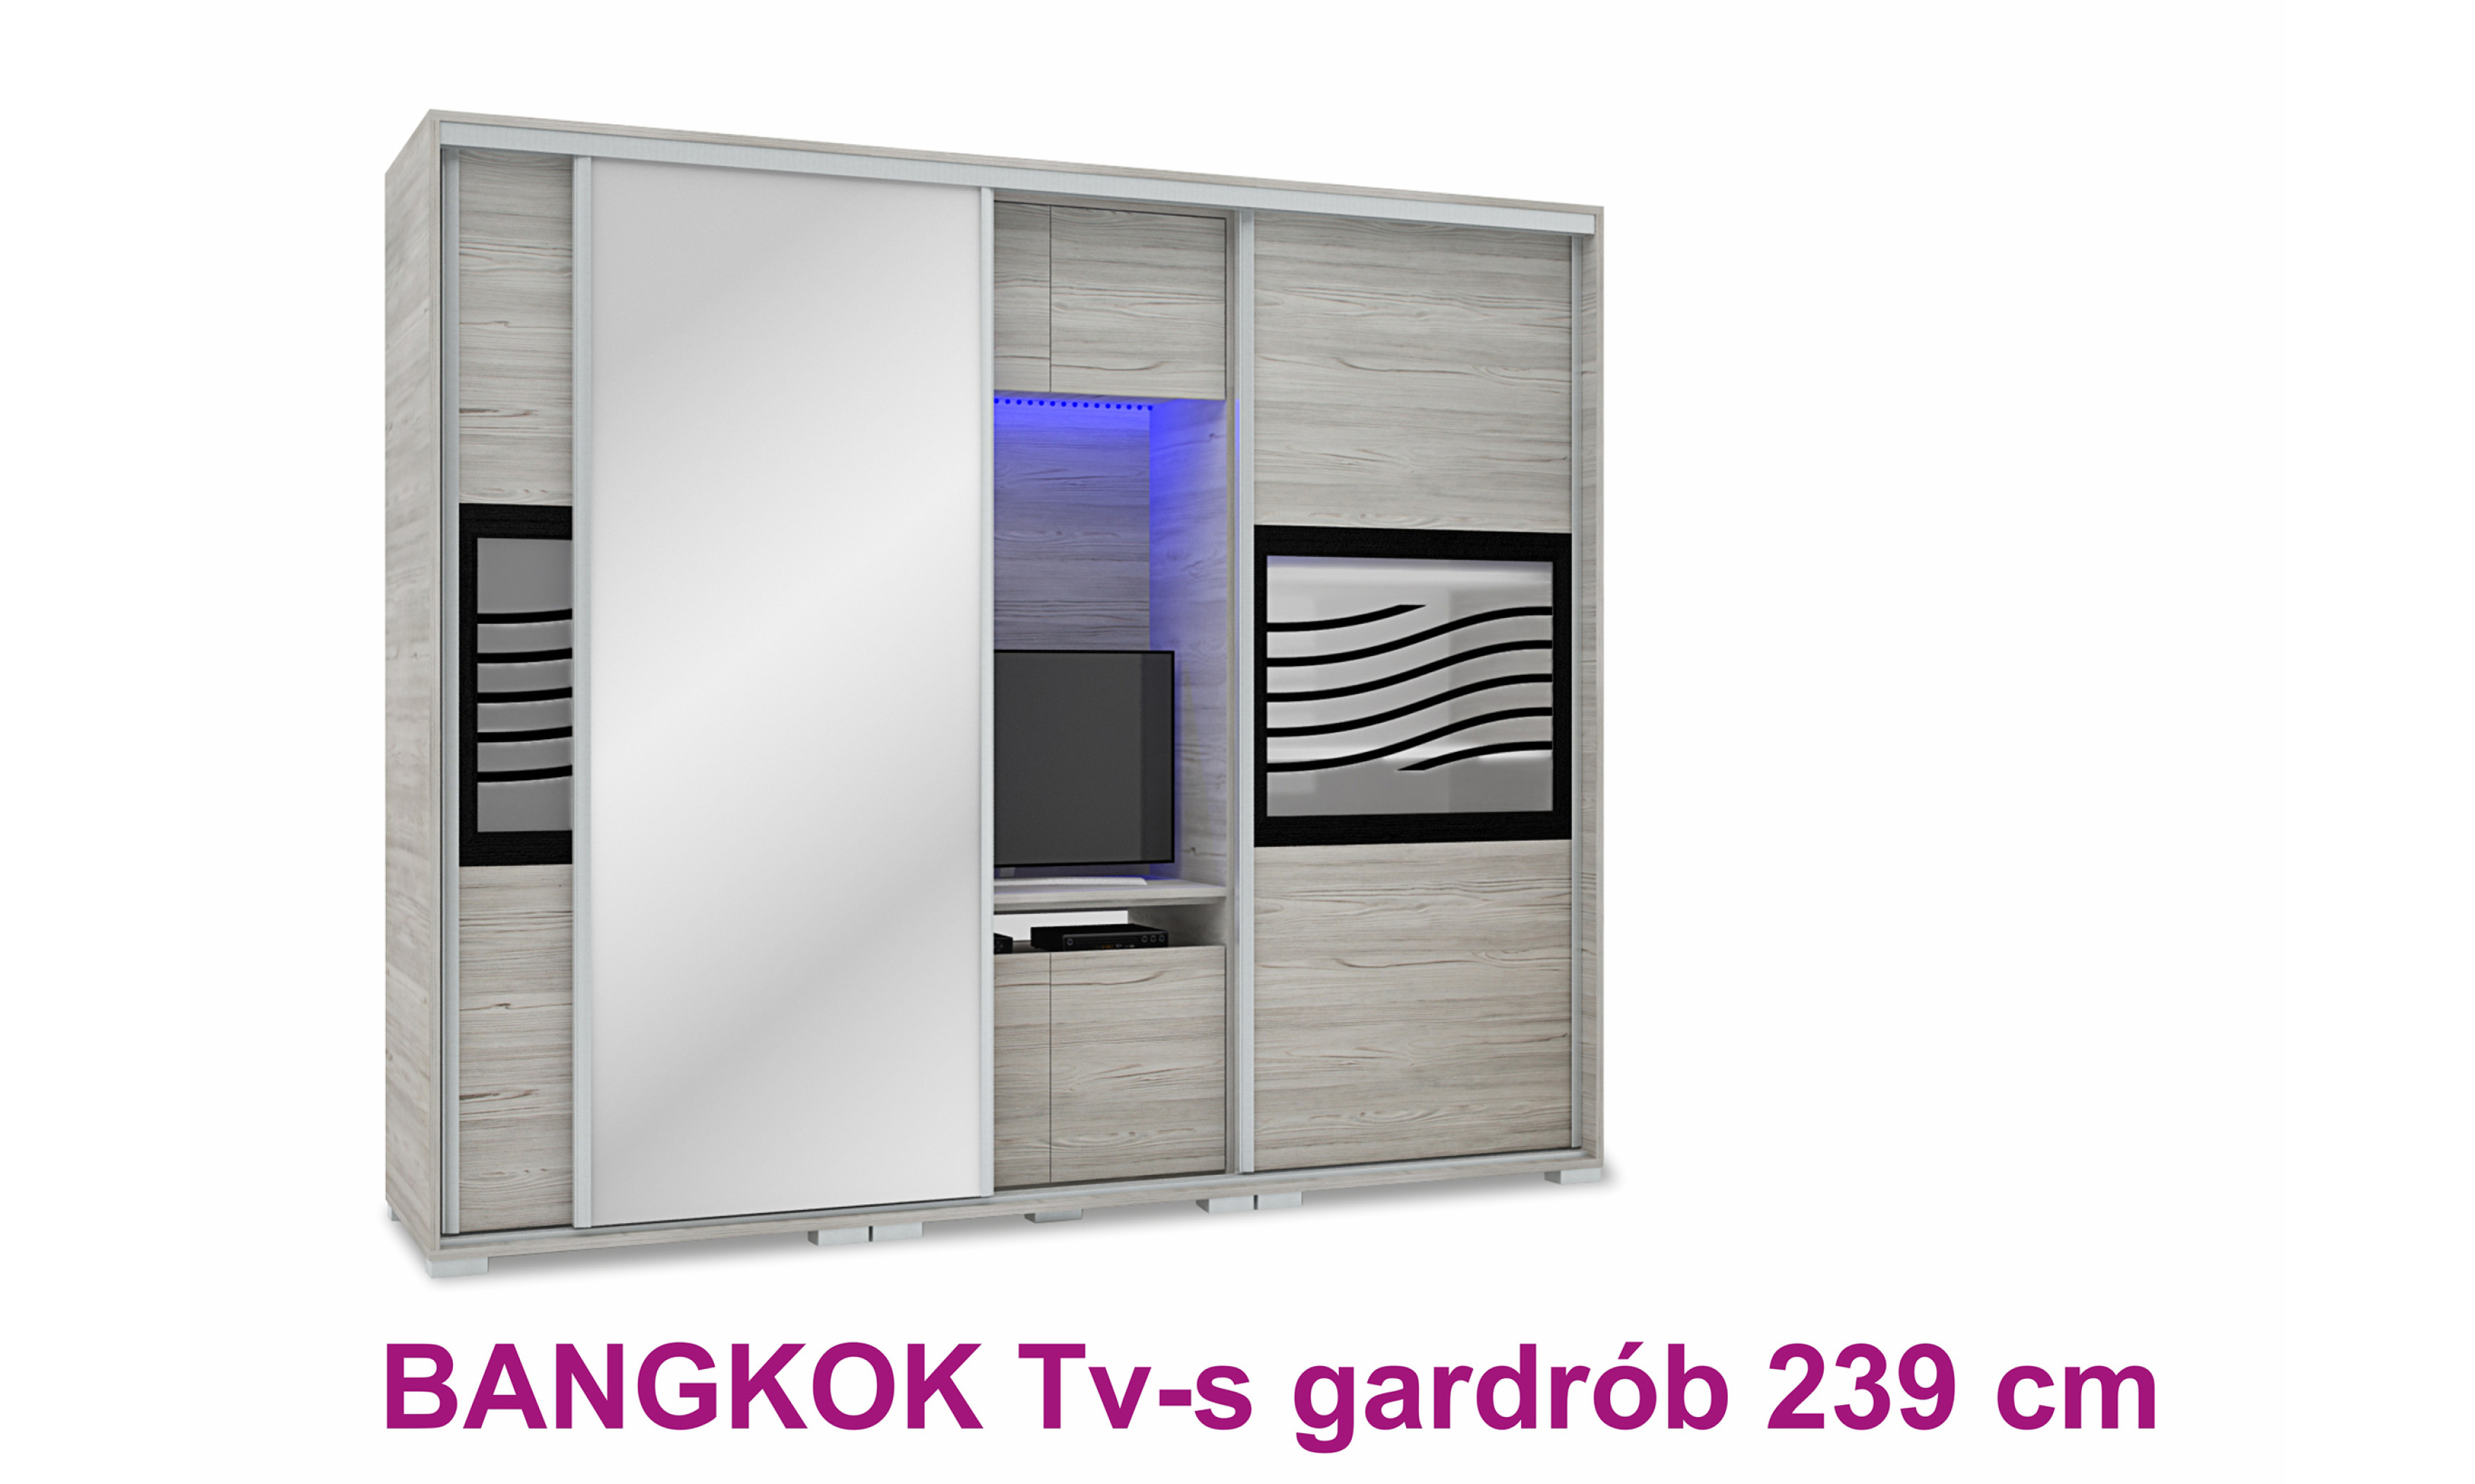 Bankok TV-s tolóajtós gardrób 239